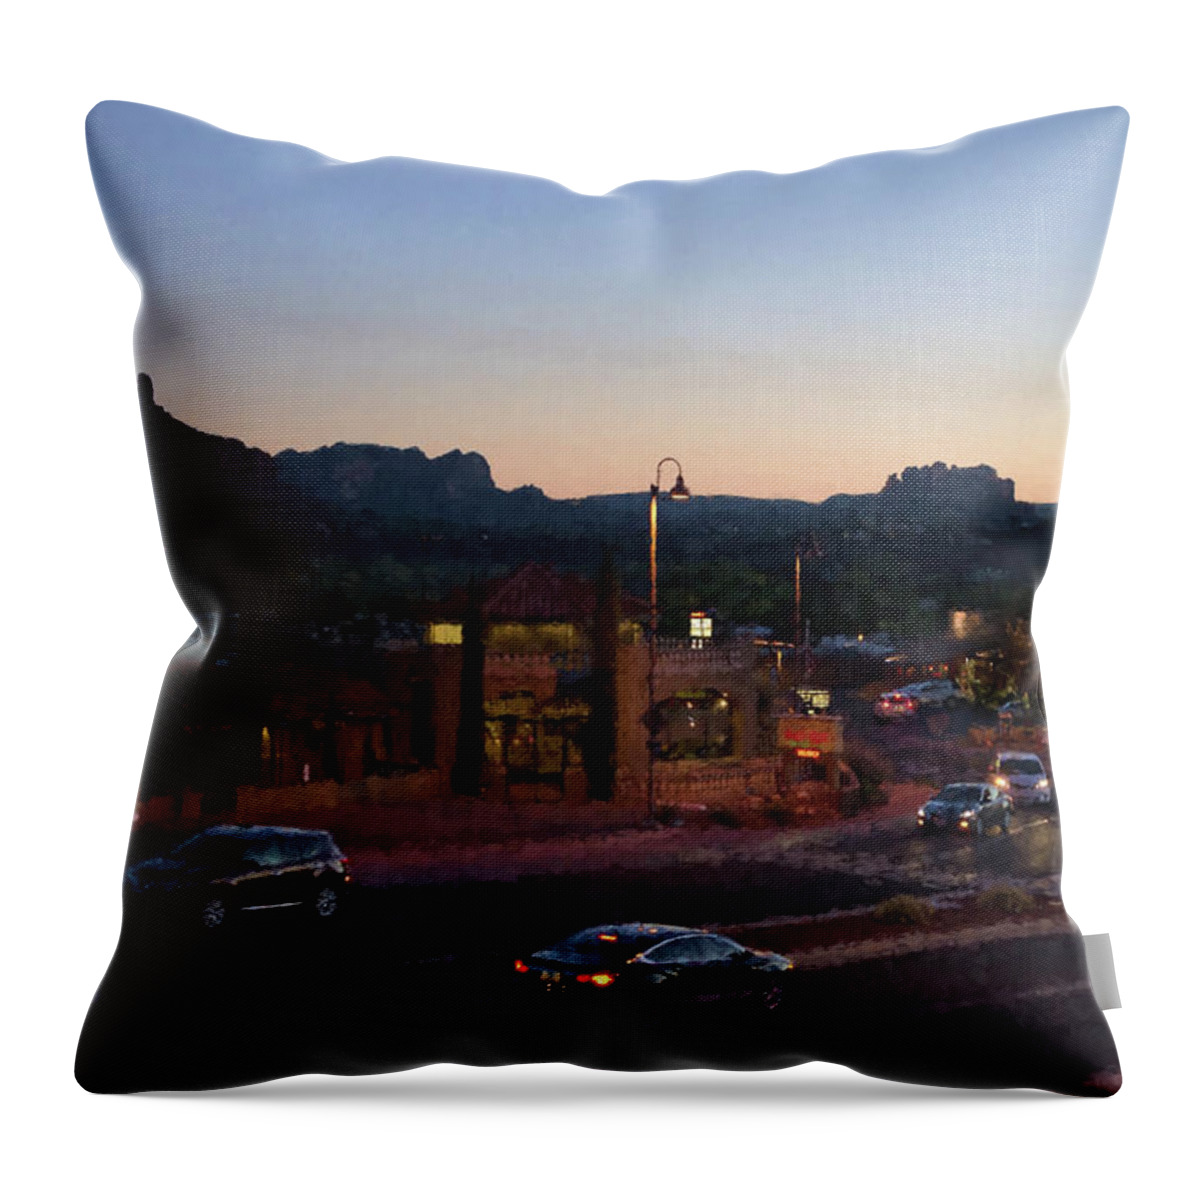 Sedona Throw Pillow featuring the photograph Nightfall in Sedona I - Painterly by David Gordon